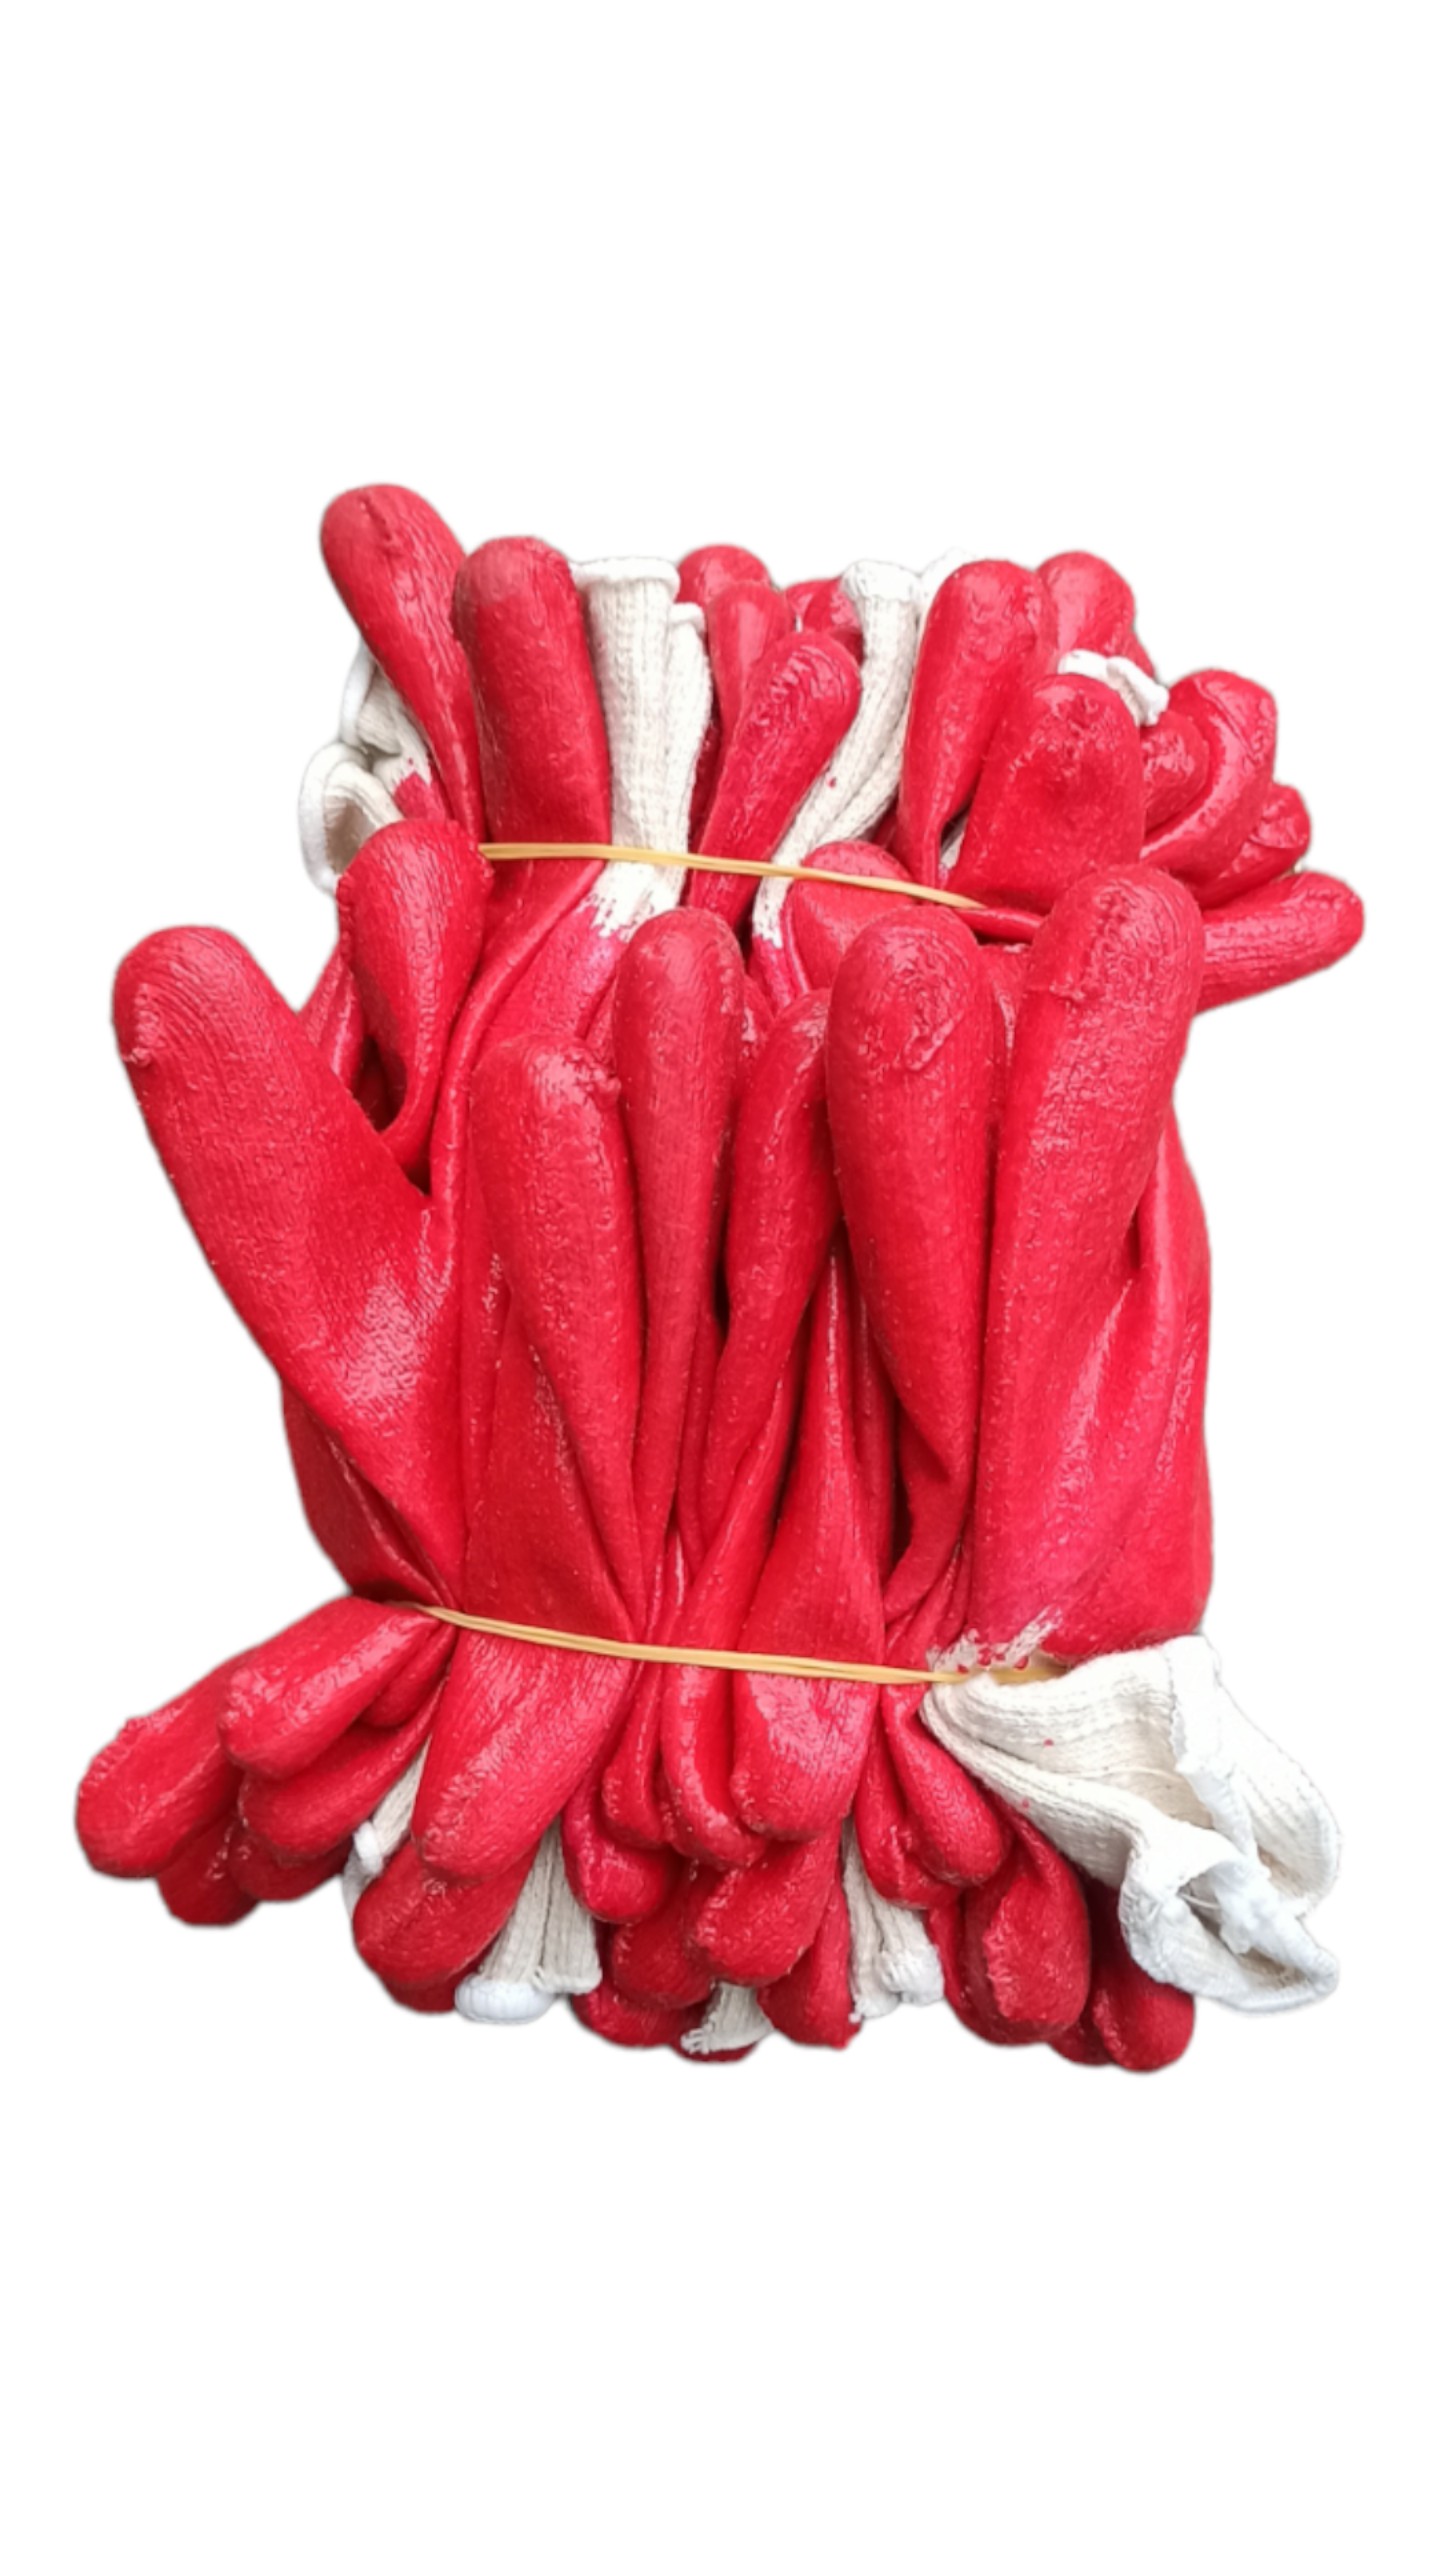 30 đôi găng tay bảo hộ lao động siêu bền - gang tay bao ho lao dong màu